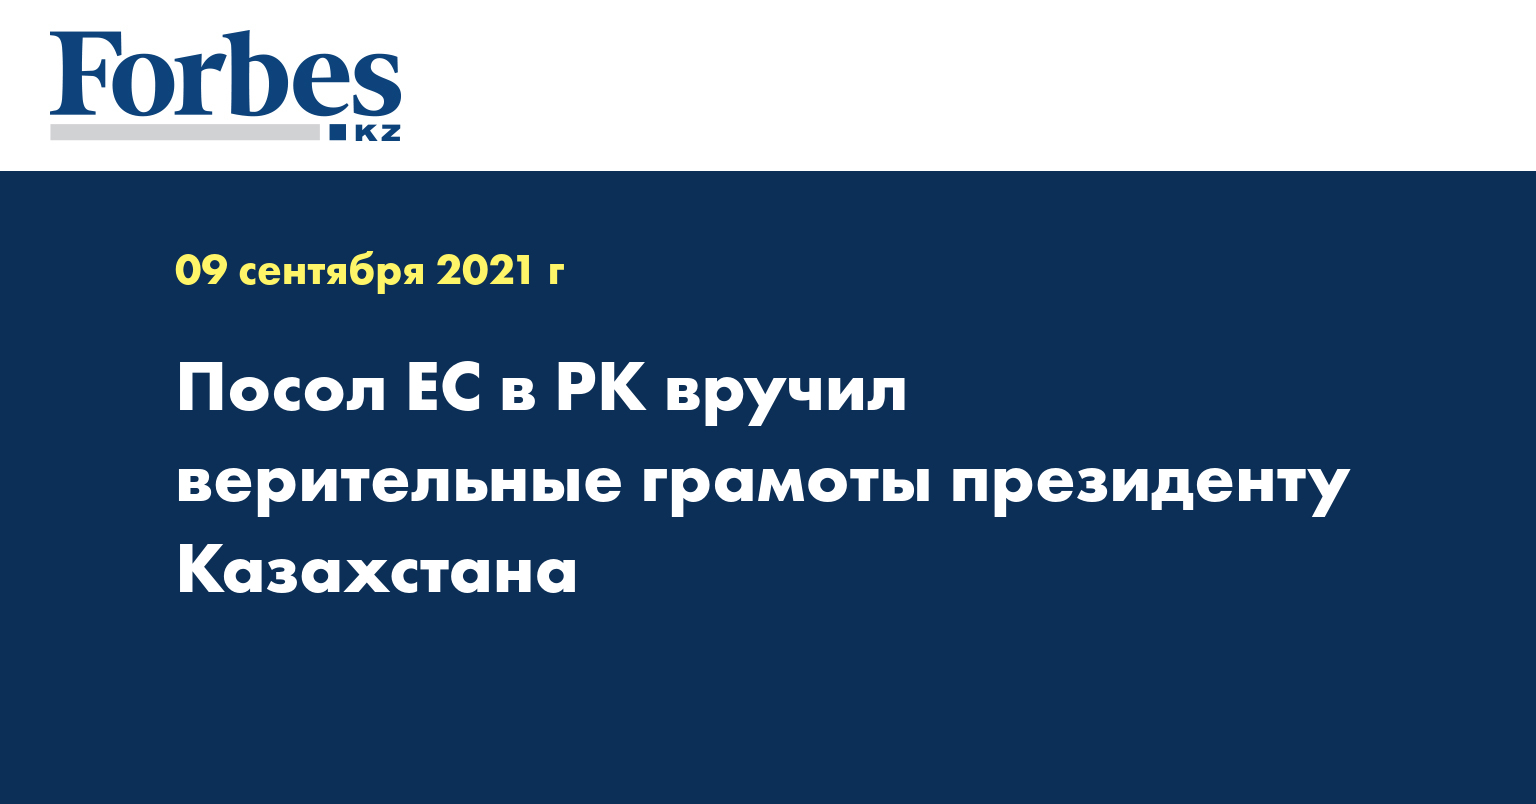 Посол ЕС в РК вручил верительные грамоты президенту Казахстана